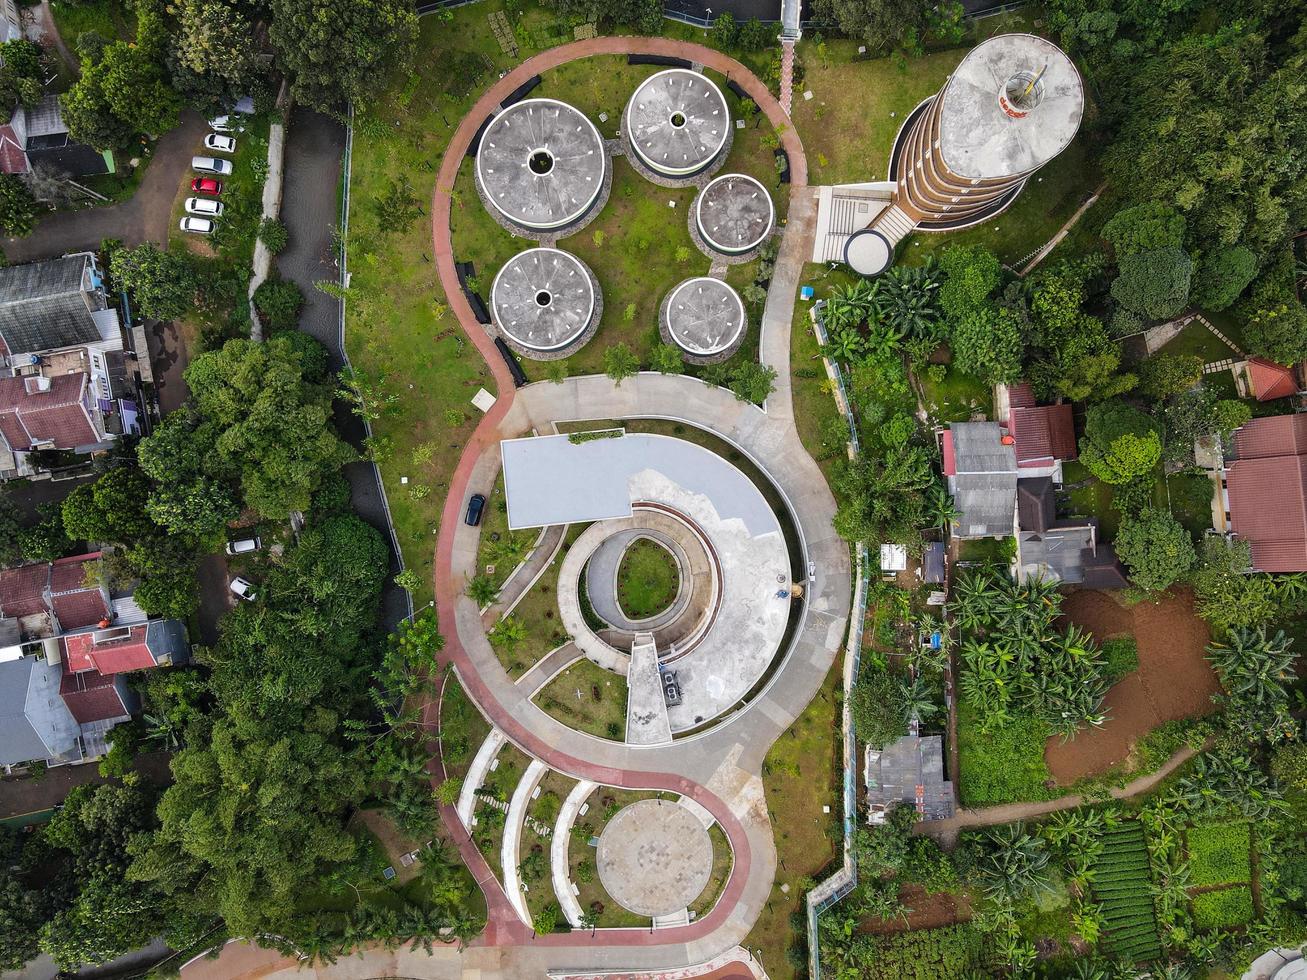 depok, indonesia 2021- veduta aerea del cortile del parco giochi pubblico circondato da alberi verdi foto